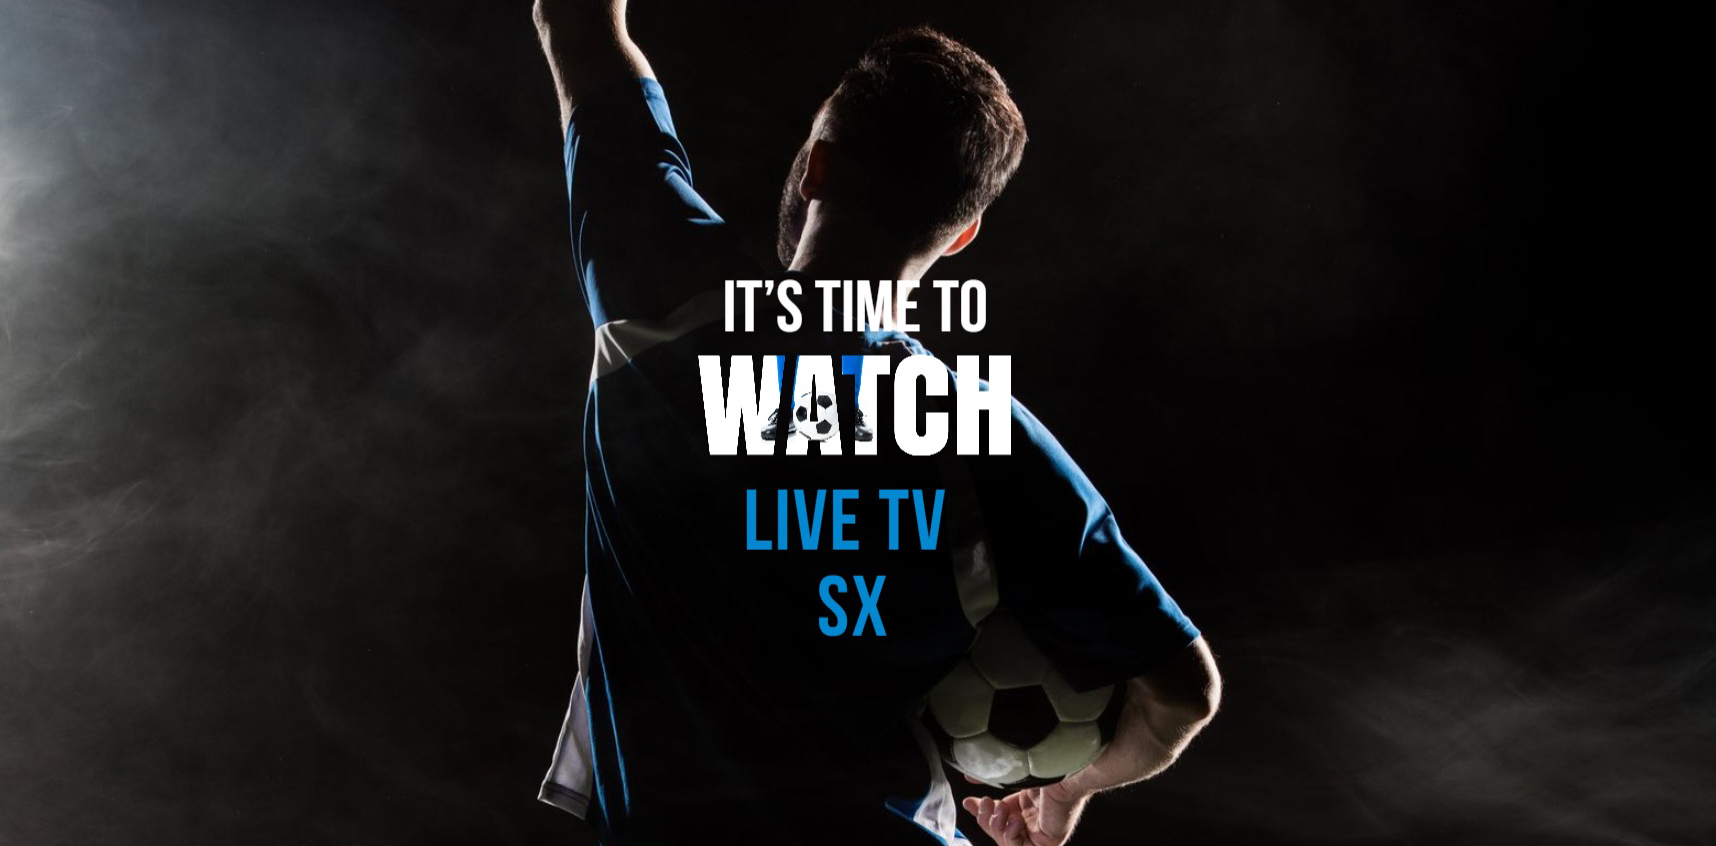 Live TV SX: смотрите прямые спортивные трансляции бесплатно